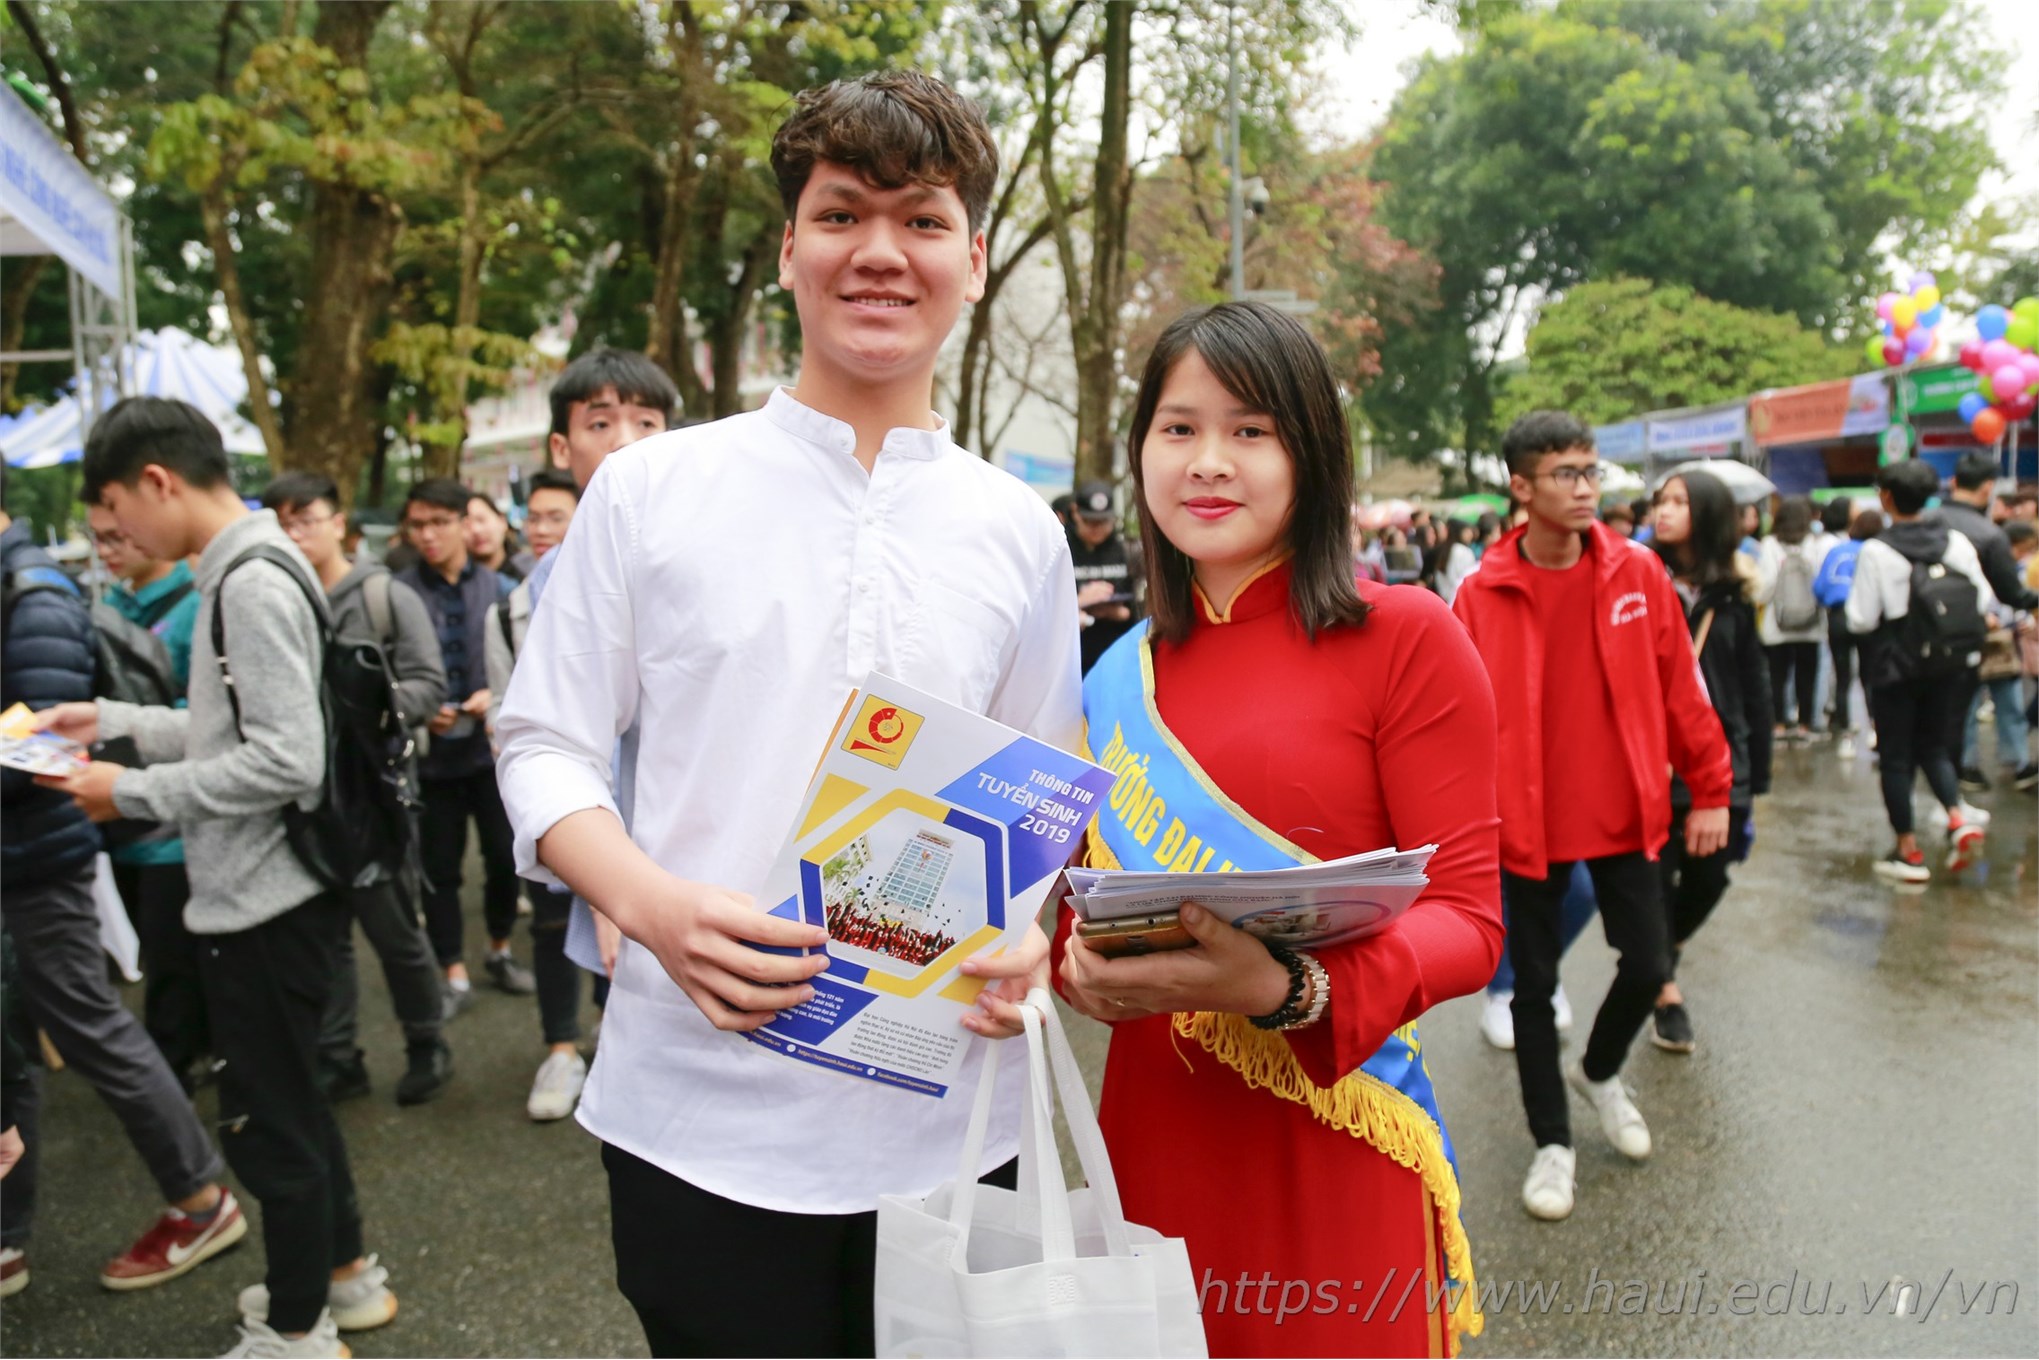 Sức hút của Đại học Công nghiệp Hà Nội tại Ngày hội tư vấn tuyển sinh - hướng nghiệp 2019